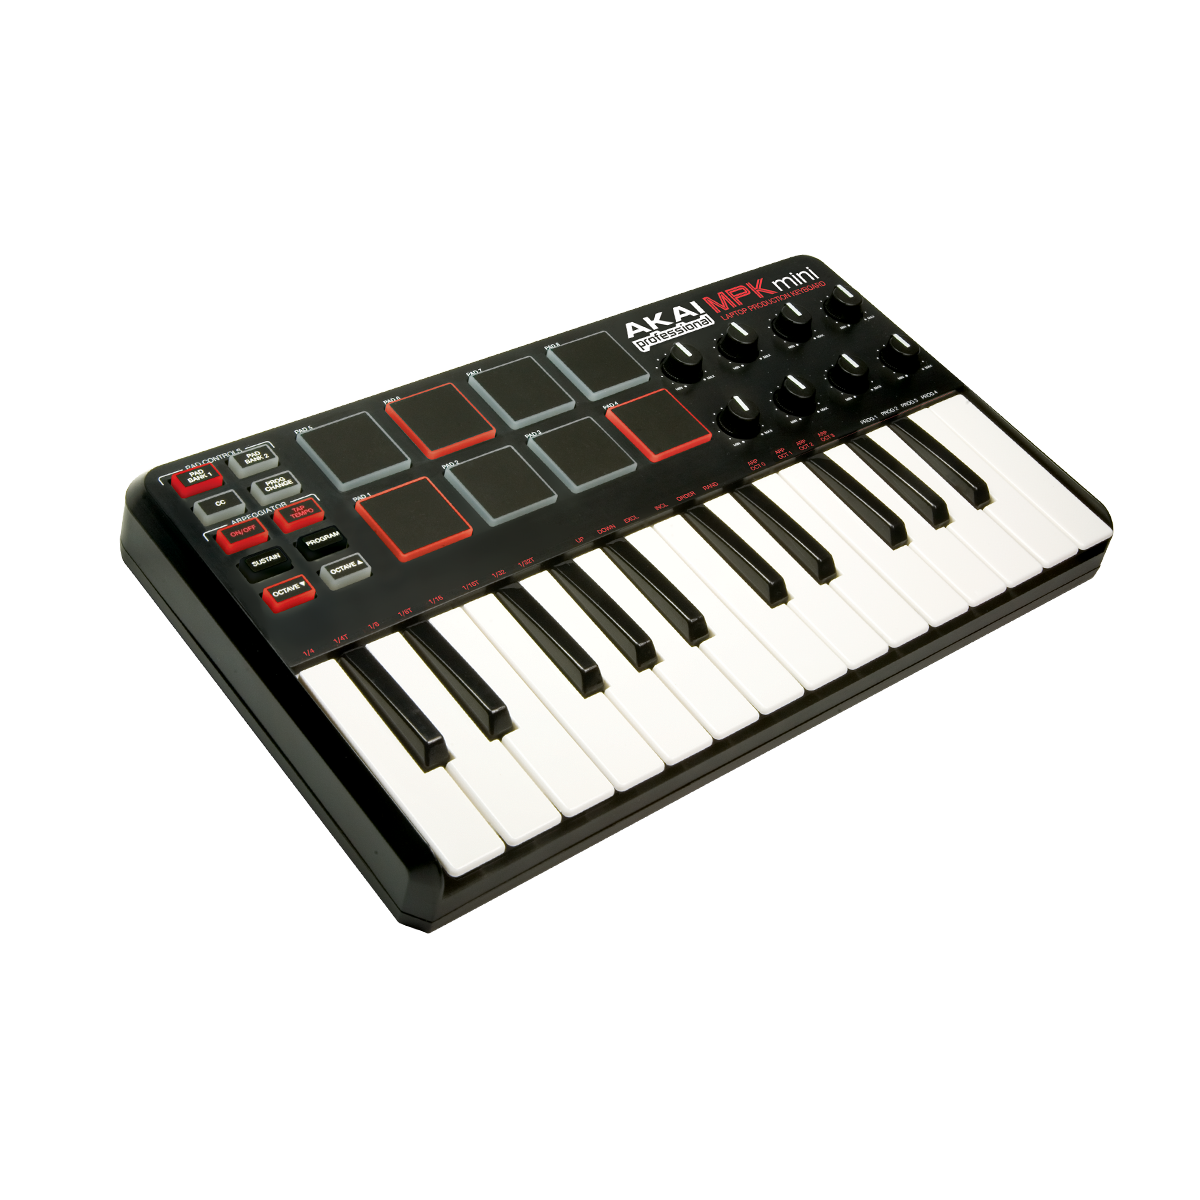 Bästa MIDI-tangentbord 2020